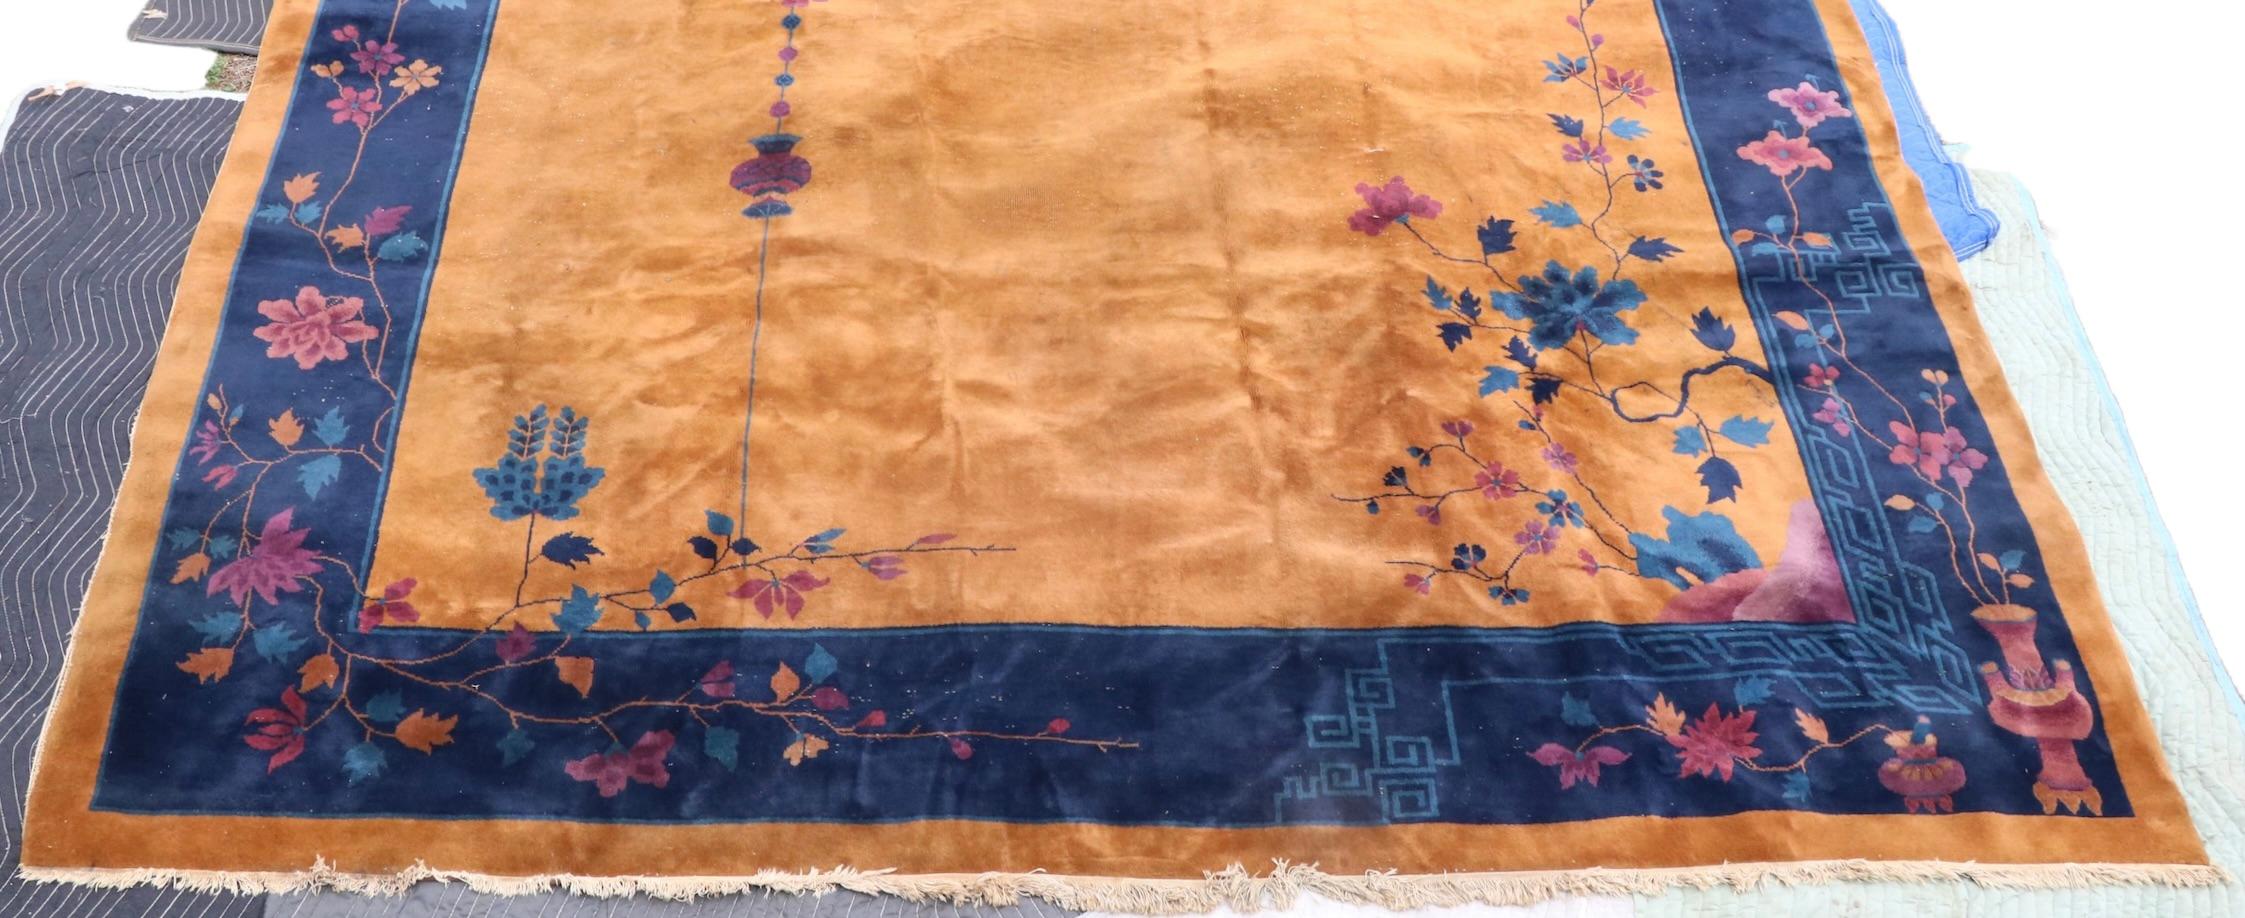 Spectaculaire tapis Art Déco de taille palace, datant des années 1920/1930. Le tapis présente un champ central de couleur beige ou moutarde, bordé de  bleu, puis moutarde à nouveau, il est orné d'un motif floral discret. La frange est en bon état,